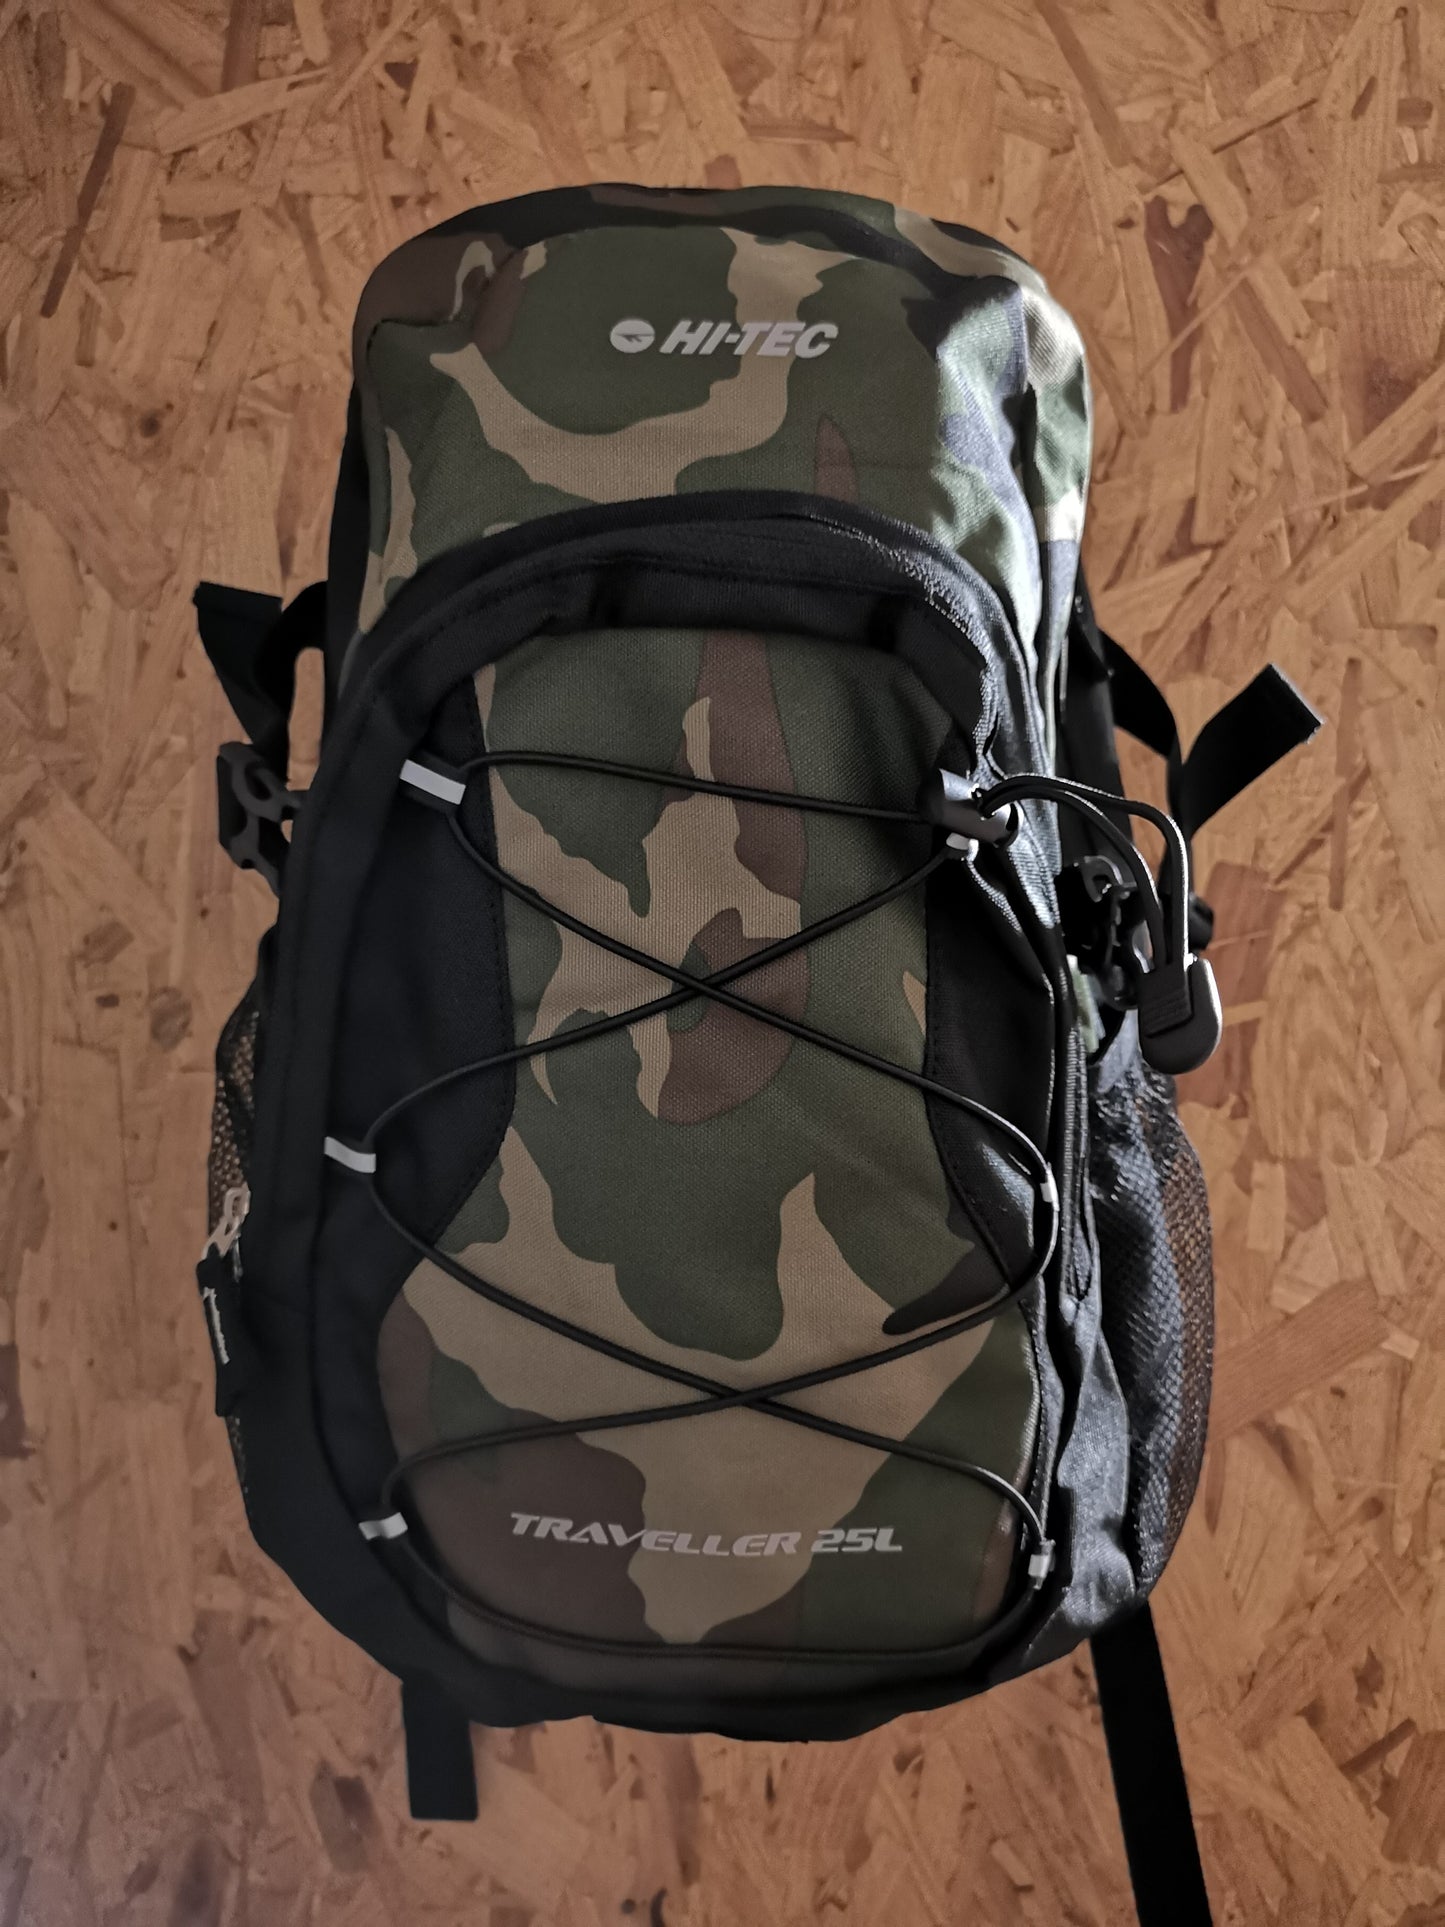 Hi-Tec traveller camo backpack